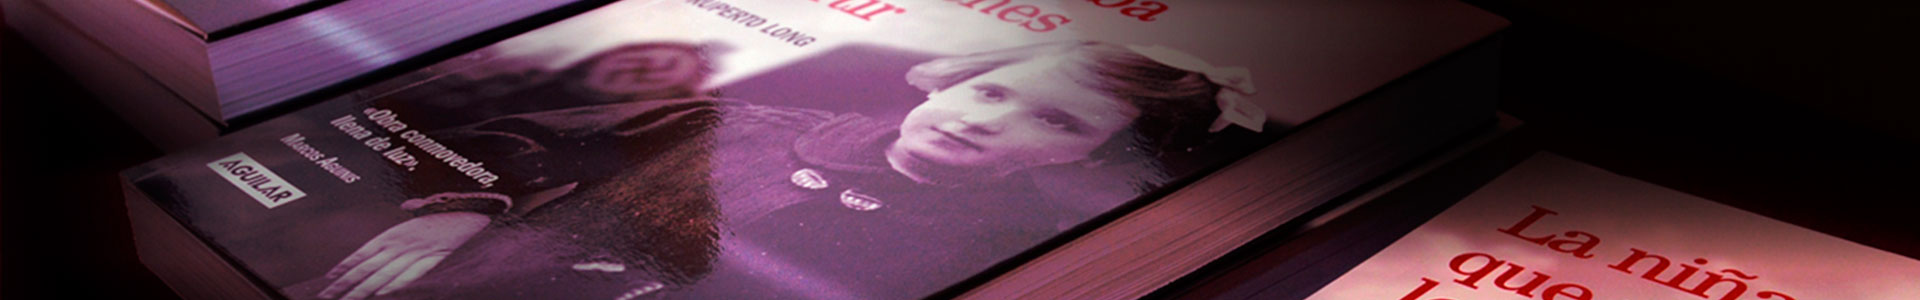 Libro La niña que miraba los trenes partir - Ruperto Long - Charlotte de Grünberg